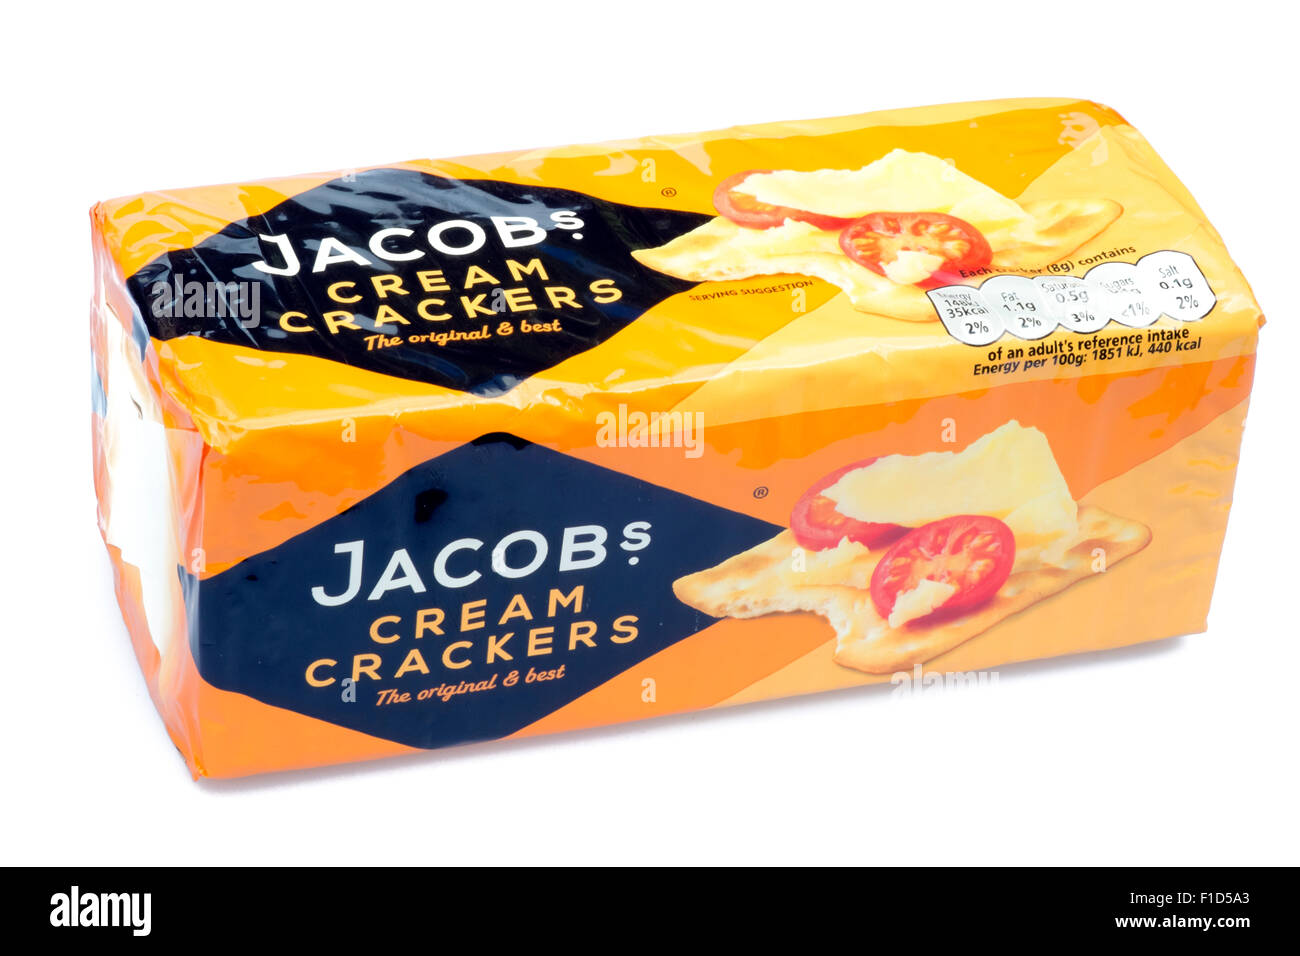 Jakobs Cream Cracker ausschneiden oder isoliert auf einem weißen Hintergrund, UK. Stockfoto